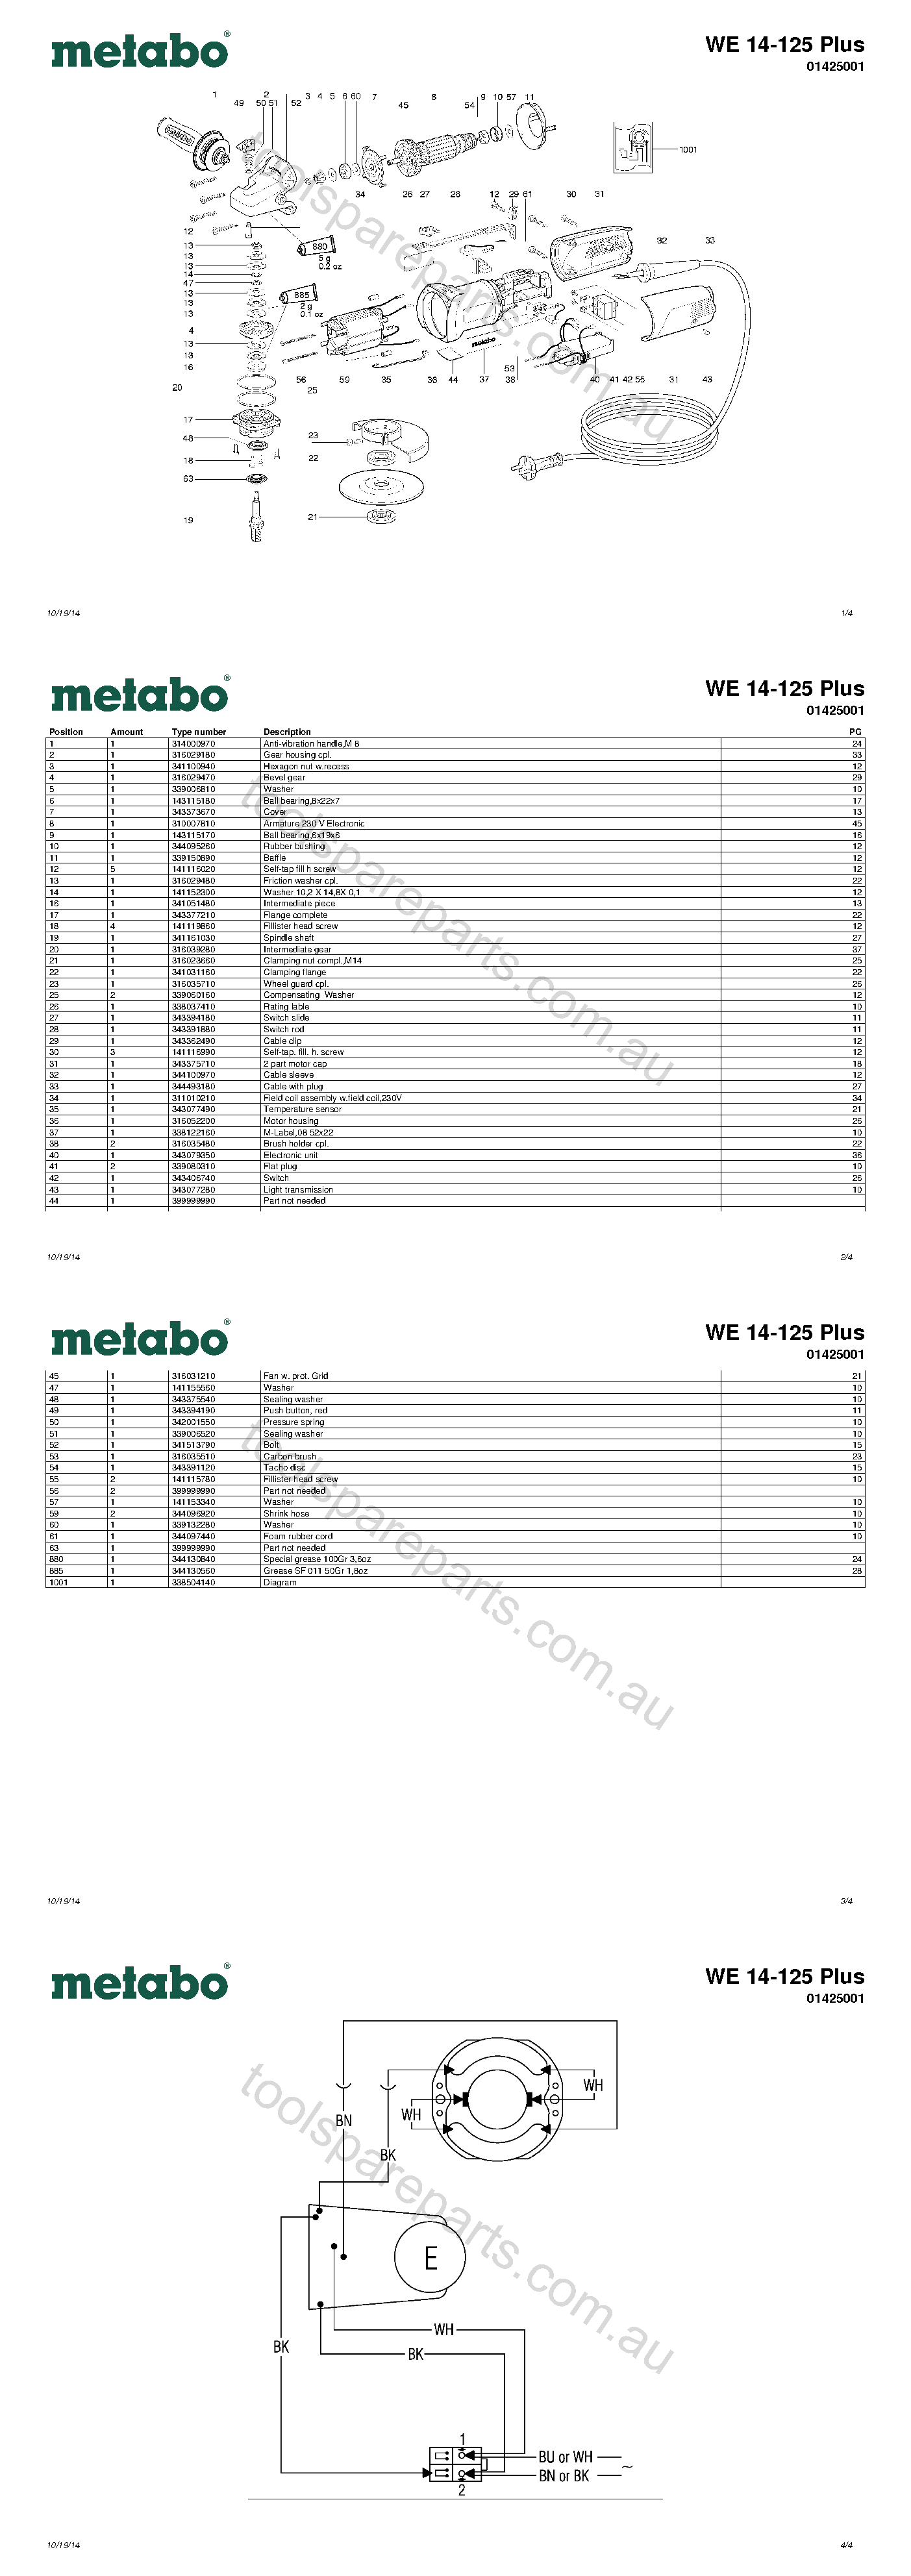 Metabo WE 14-125 Plus 01425001  Diagram 1